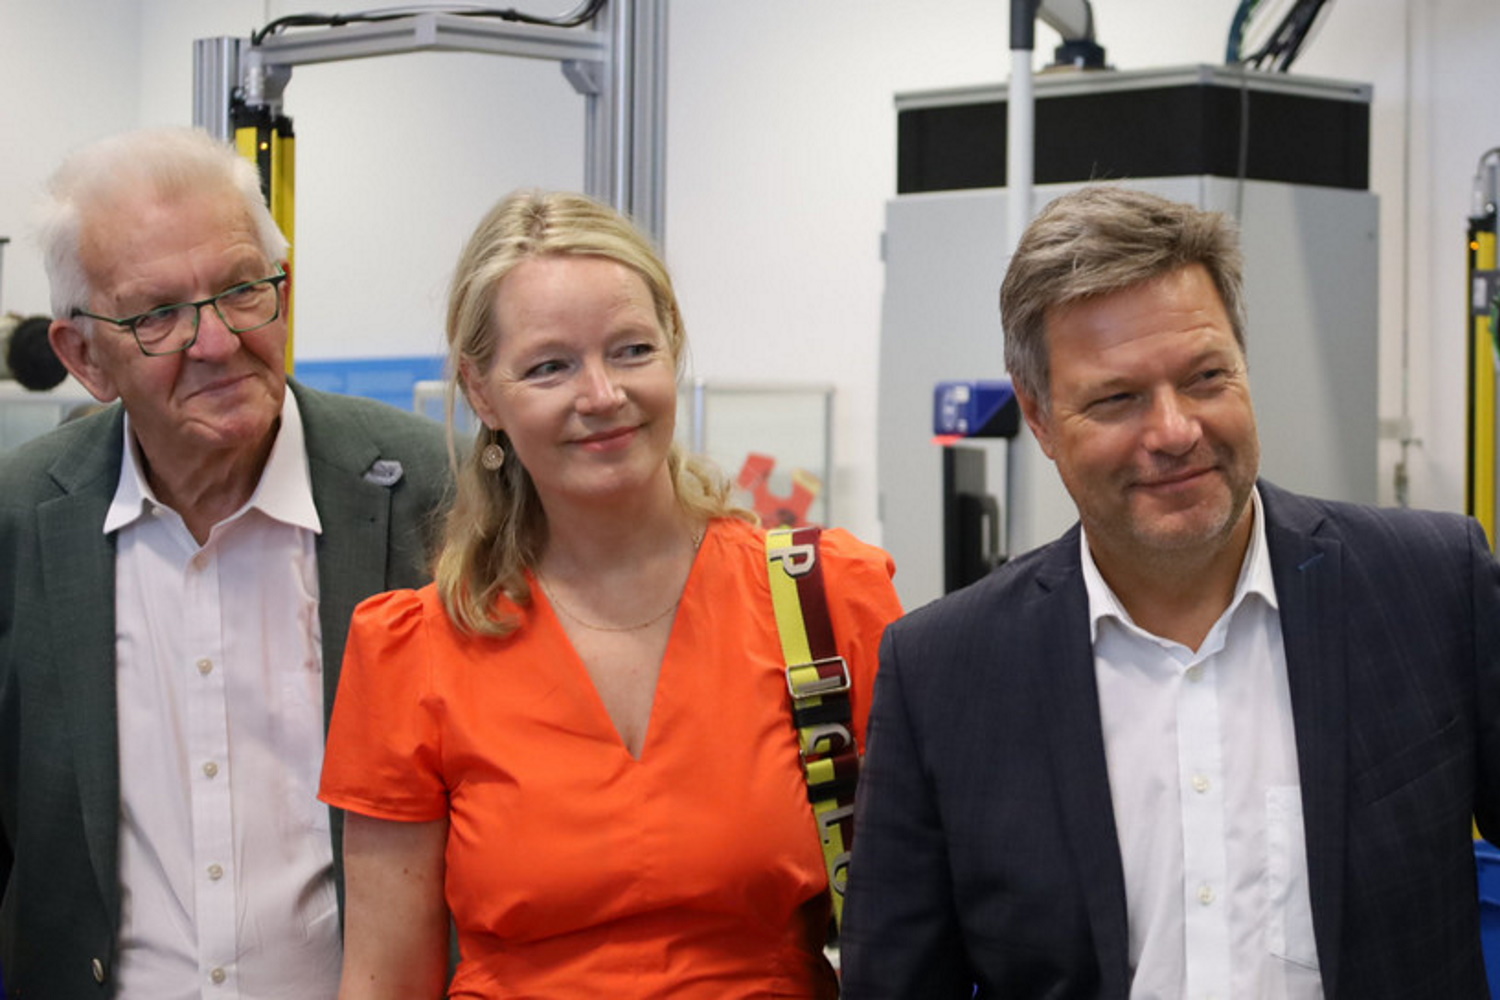 Winfried Kretschmann, Thekla Walker und Robert Habeck stehen in der Produktionshalle bei Bosch und lächeln in die Kamera.